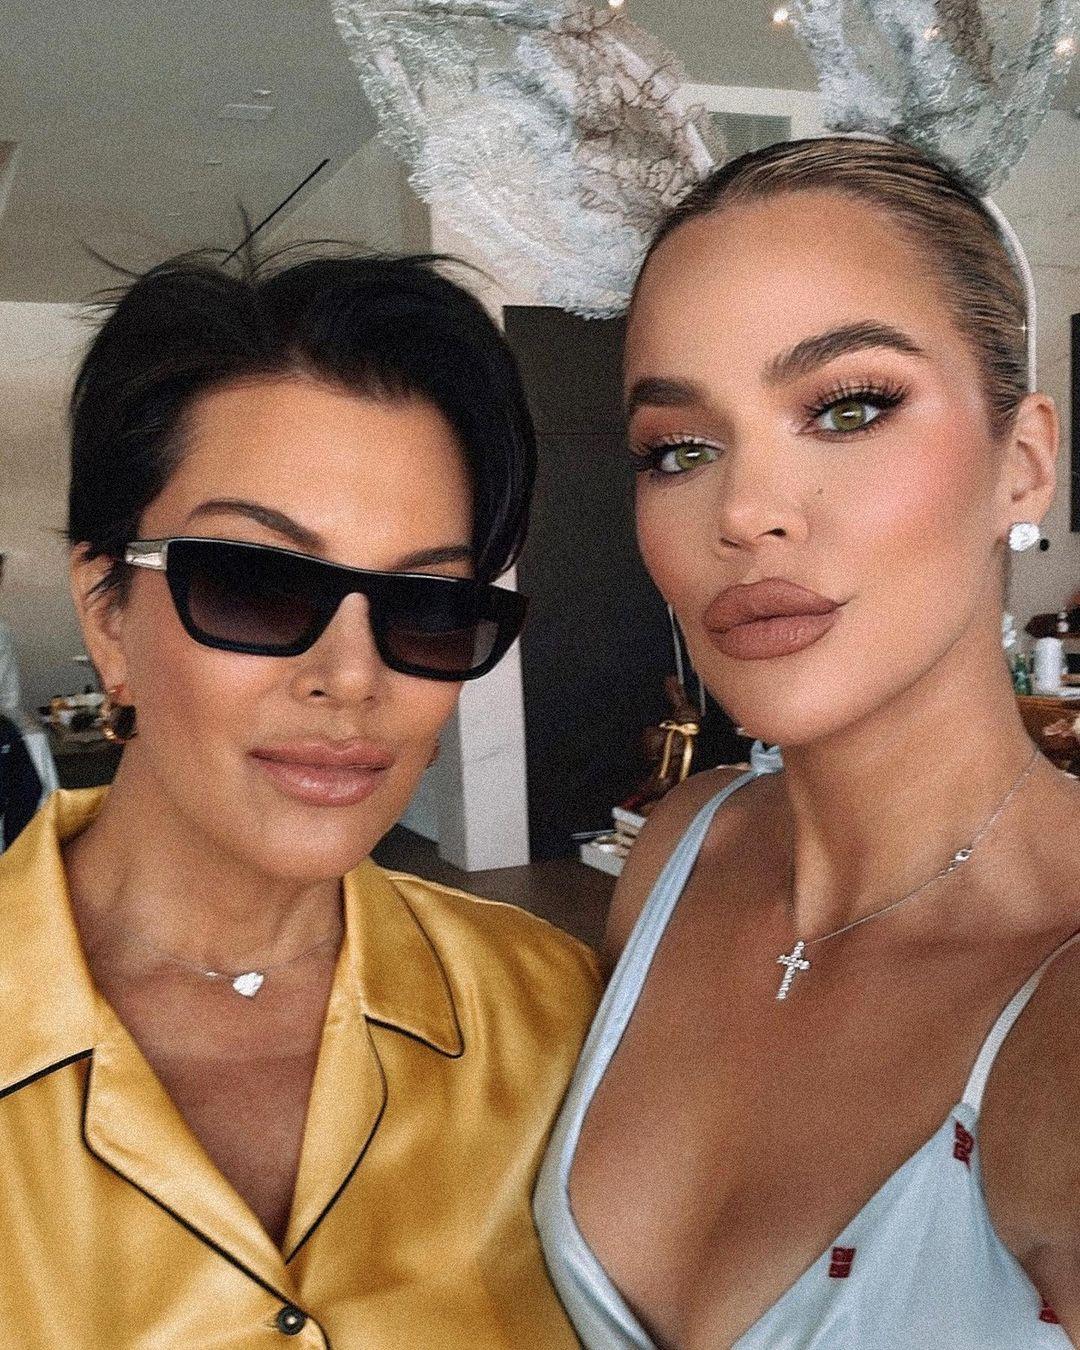 Kris Jenner and Khloe Kardashian face plastic surgery rumors